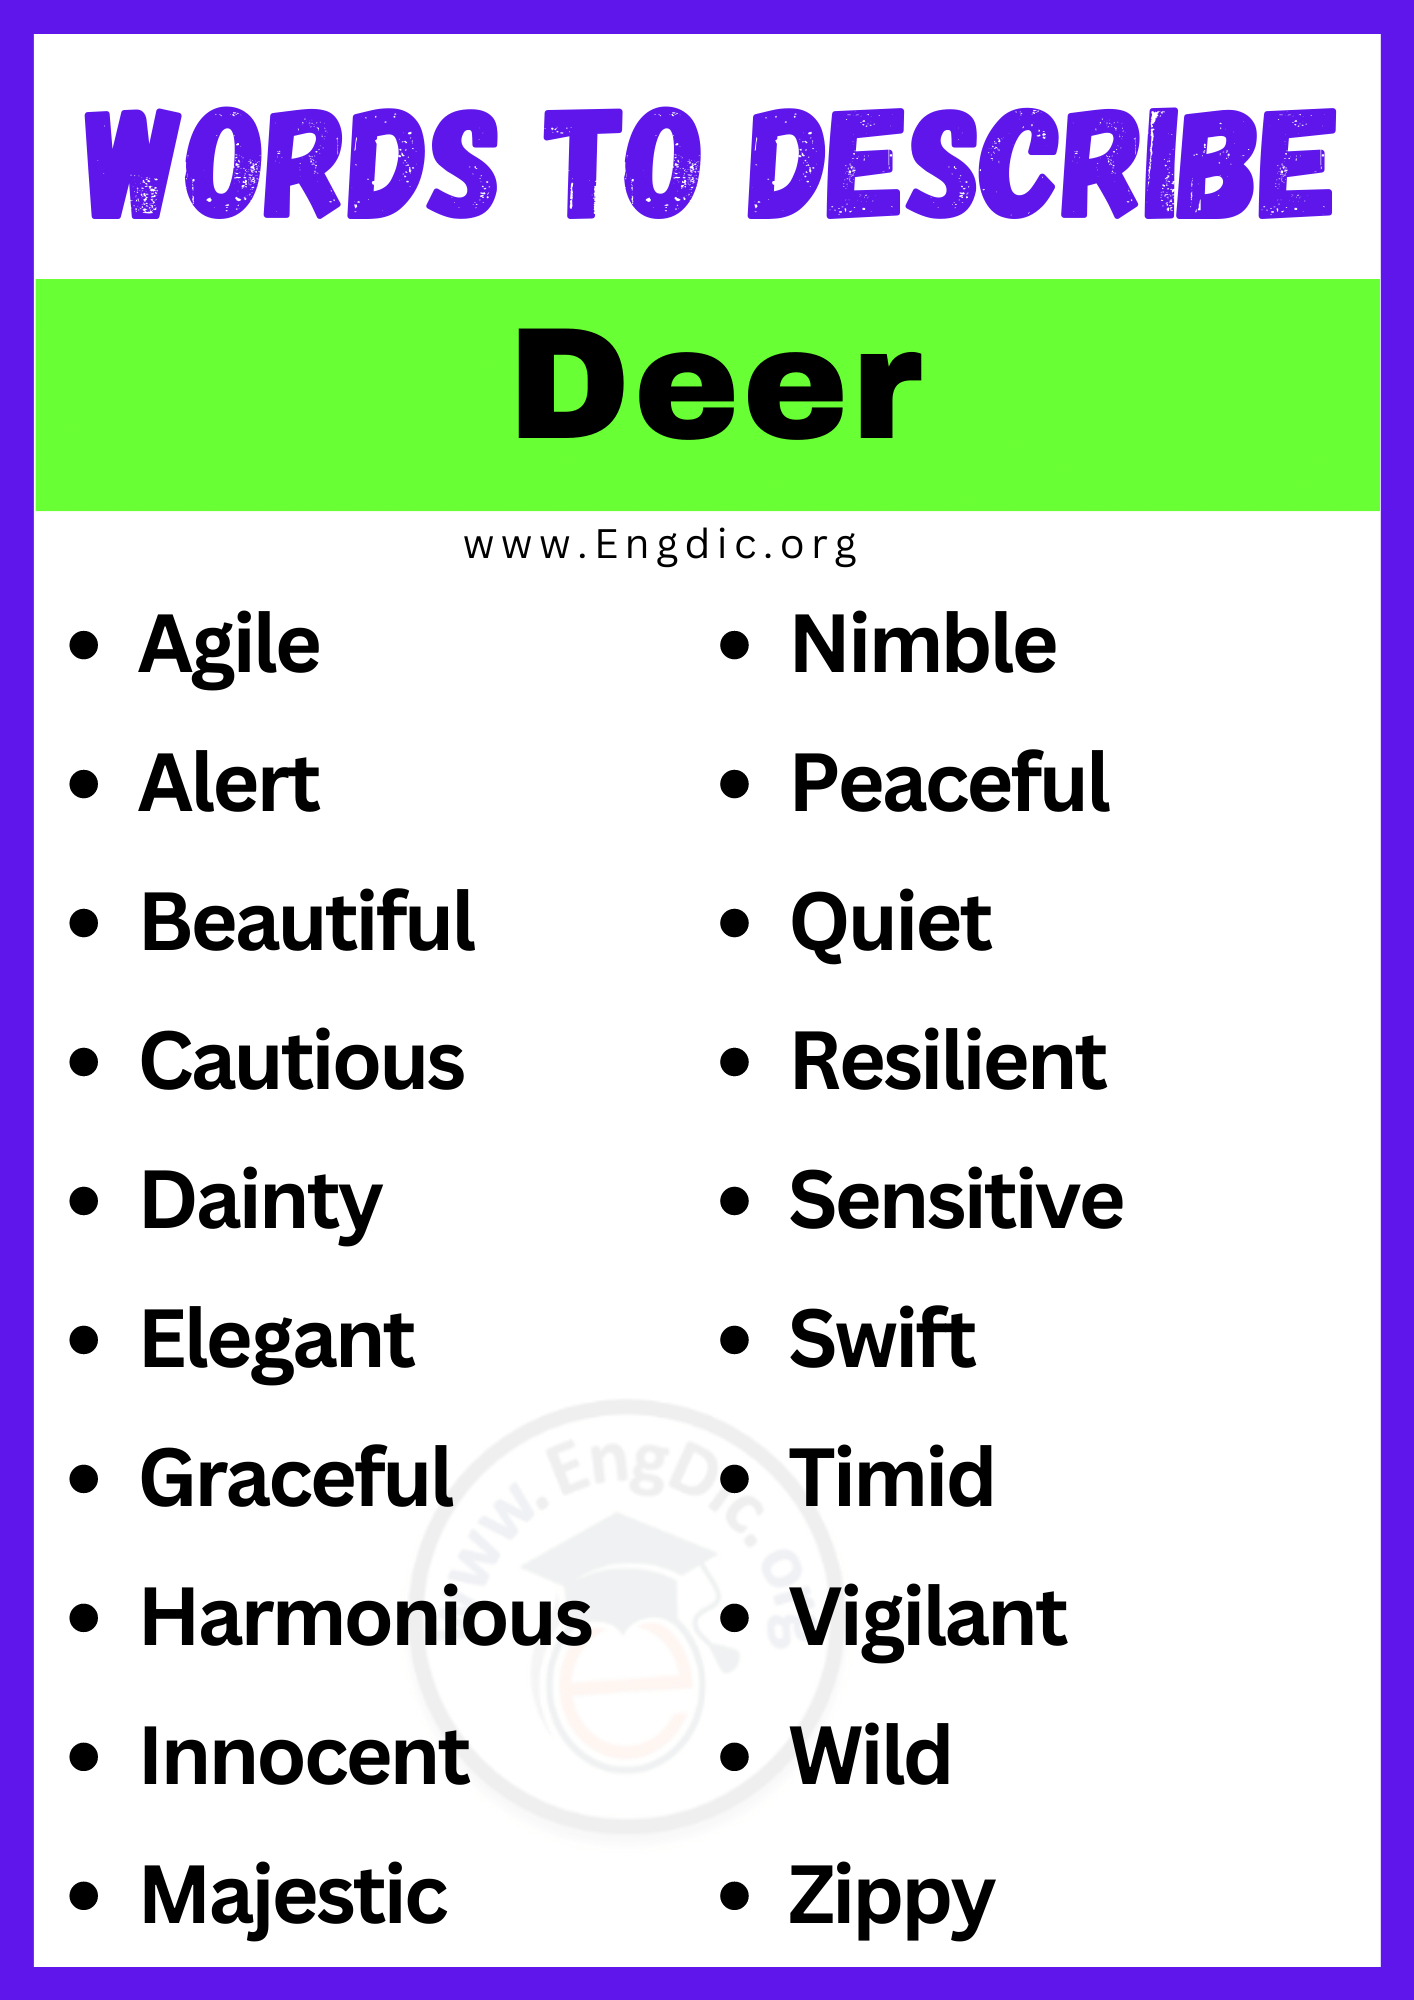 Words to Describe Deer